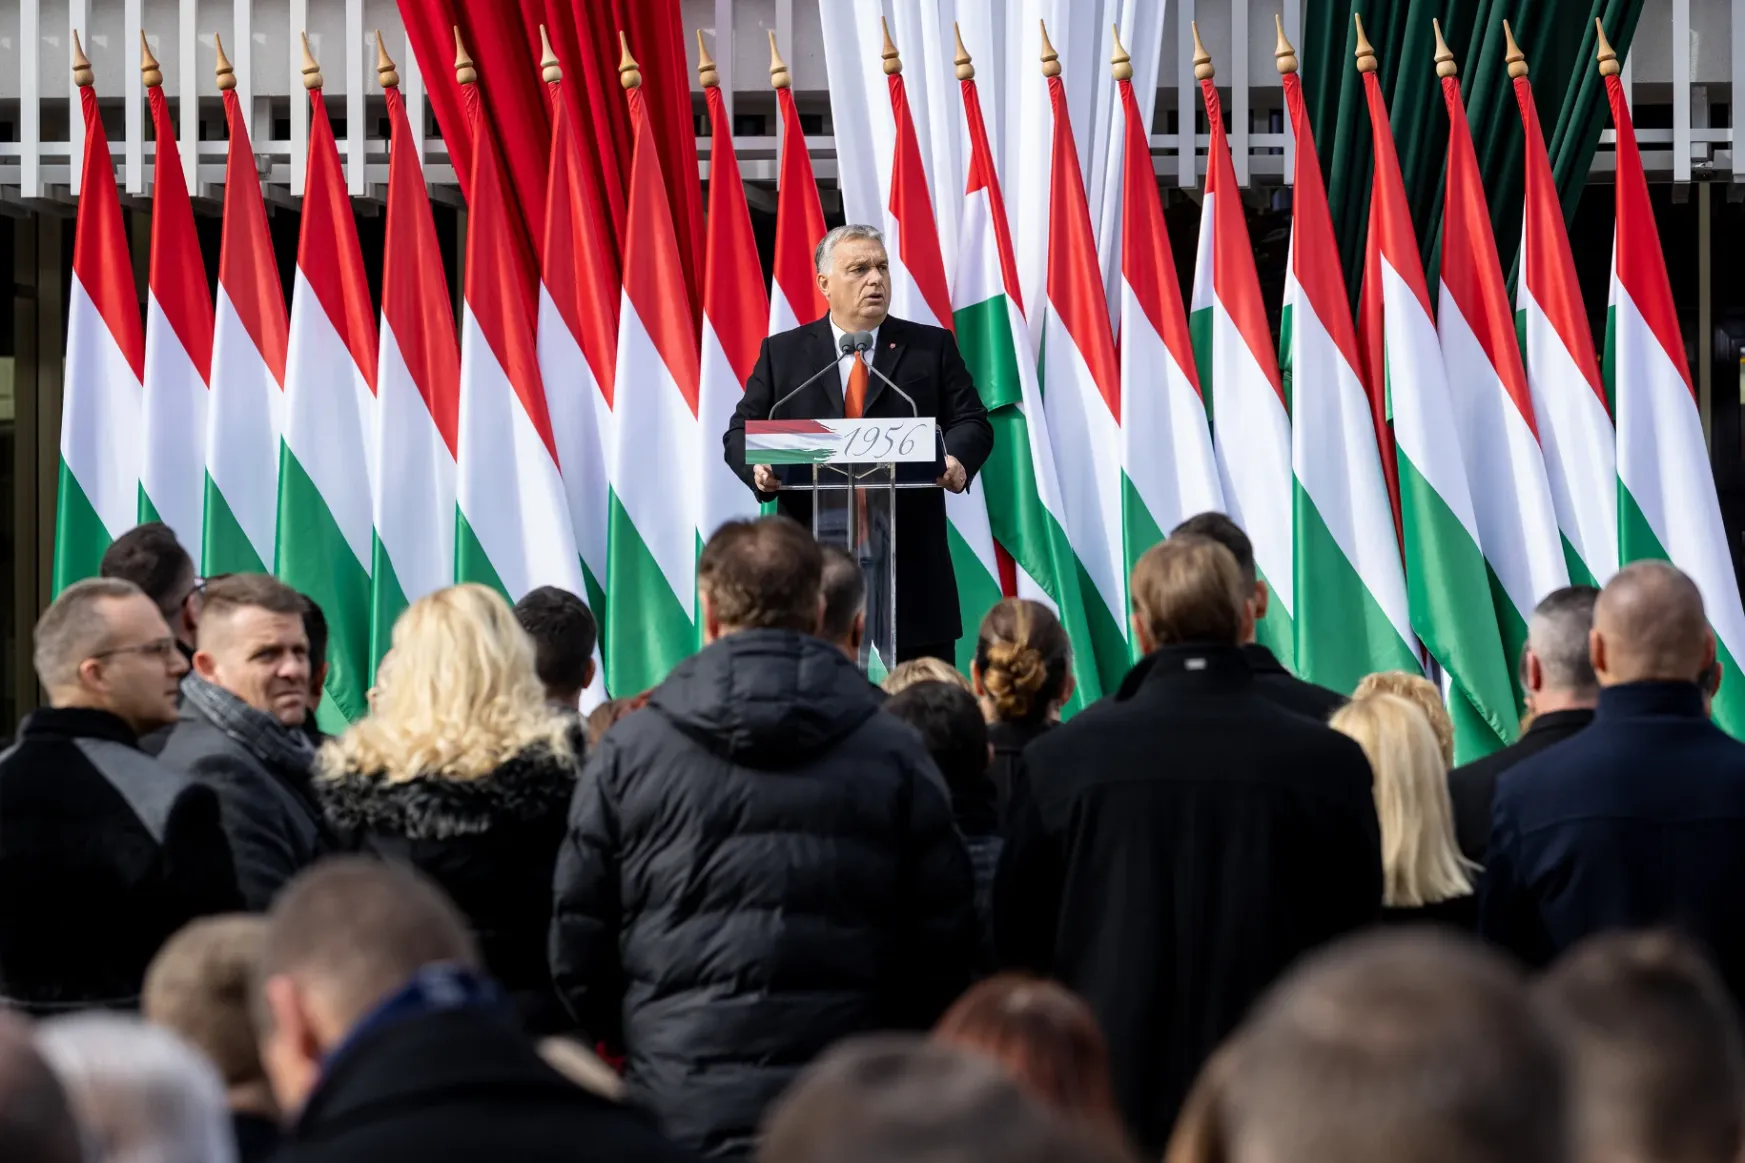 Zárt kordonok mögött mondott beszédet Orbán Viktor Zalaegerszegen